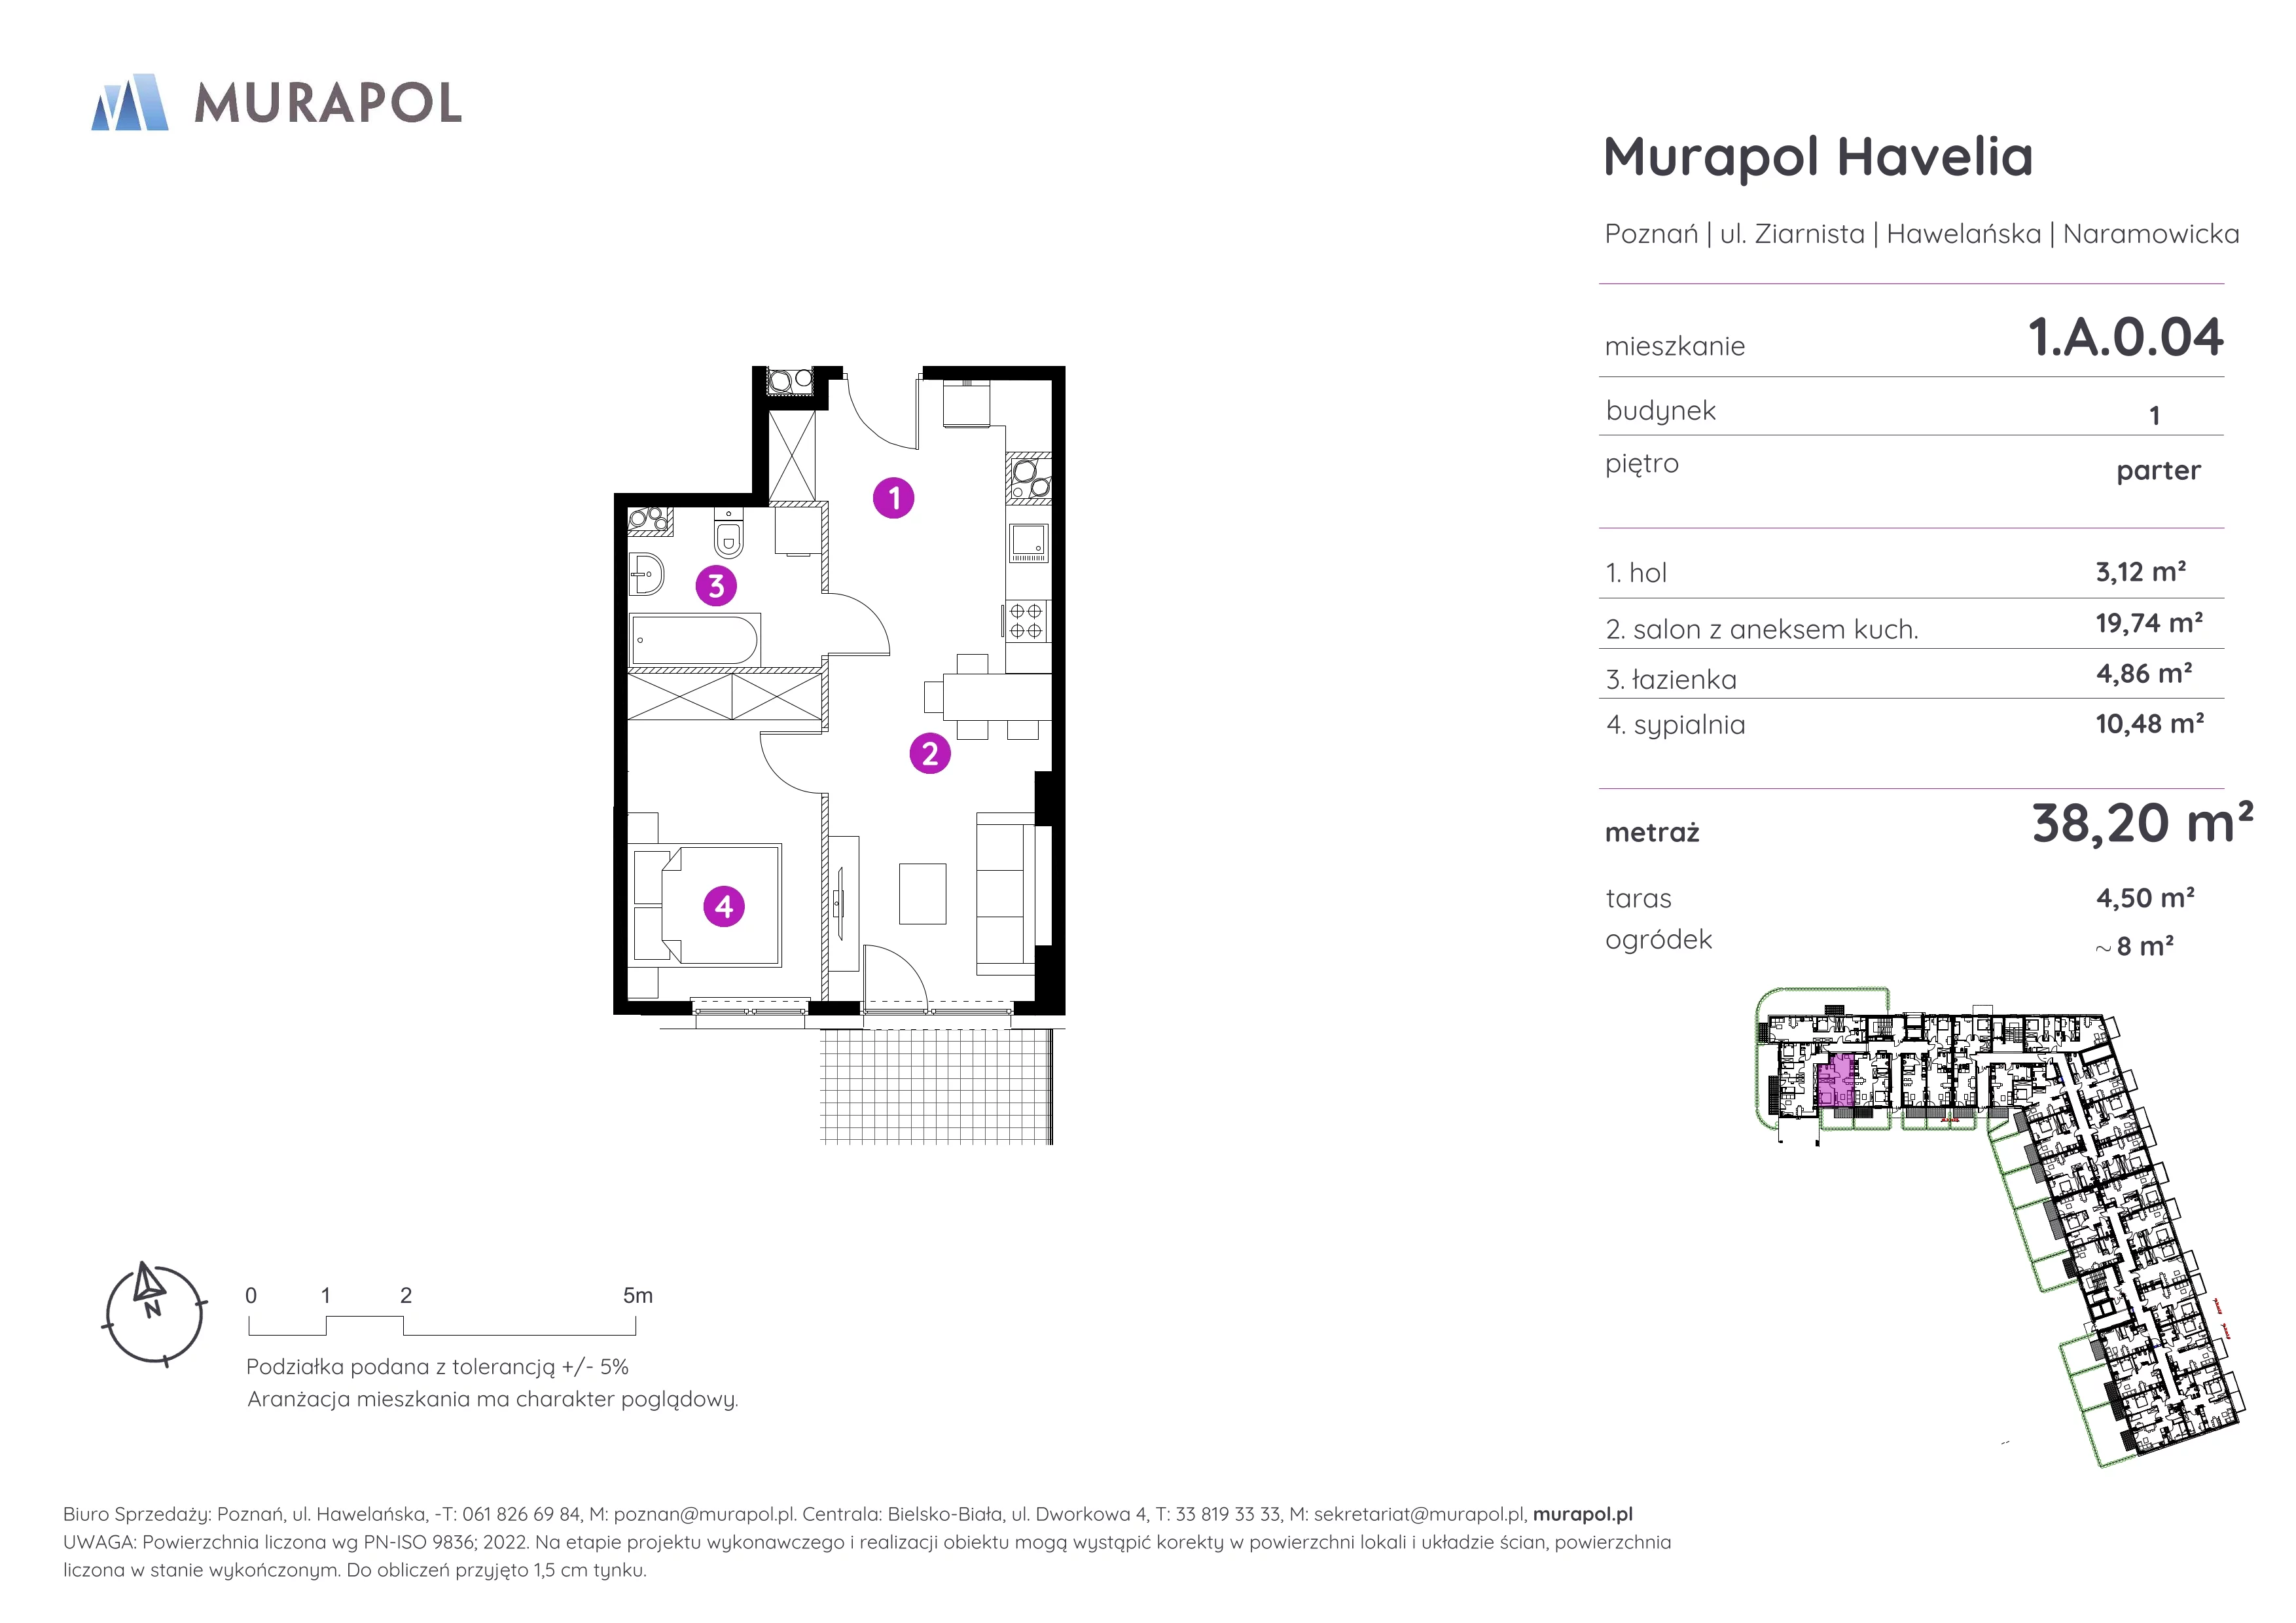 Mieszkanie 38,20 m², parter, oferta nr 1.A.0.04, Murapol Havelia, Poznań, Winogrady, Stare Winogrady, ul. Ziarnista / Naramowicka